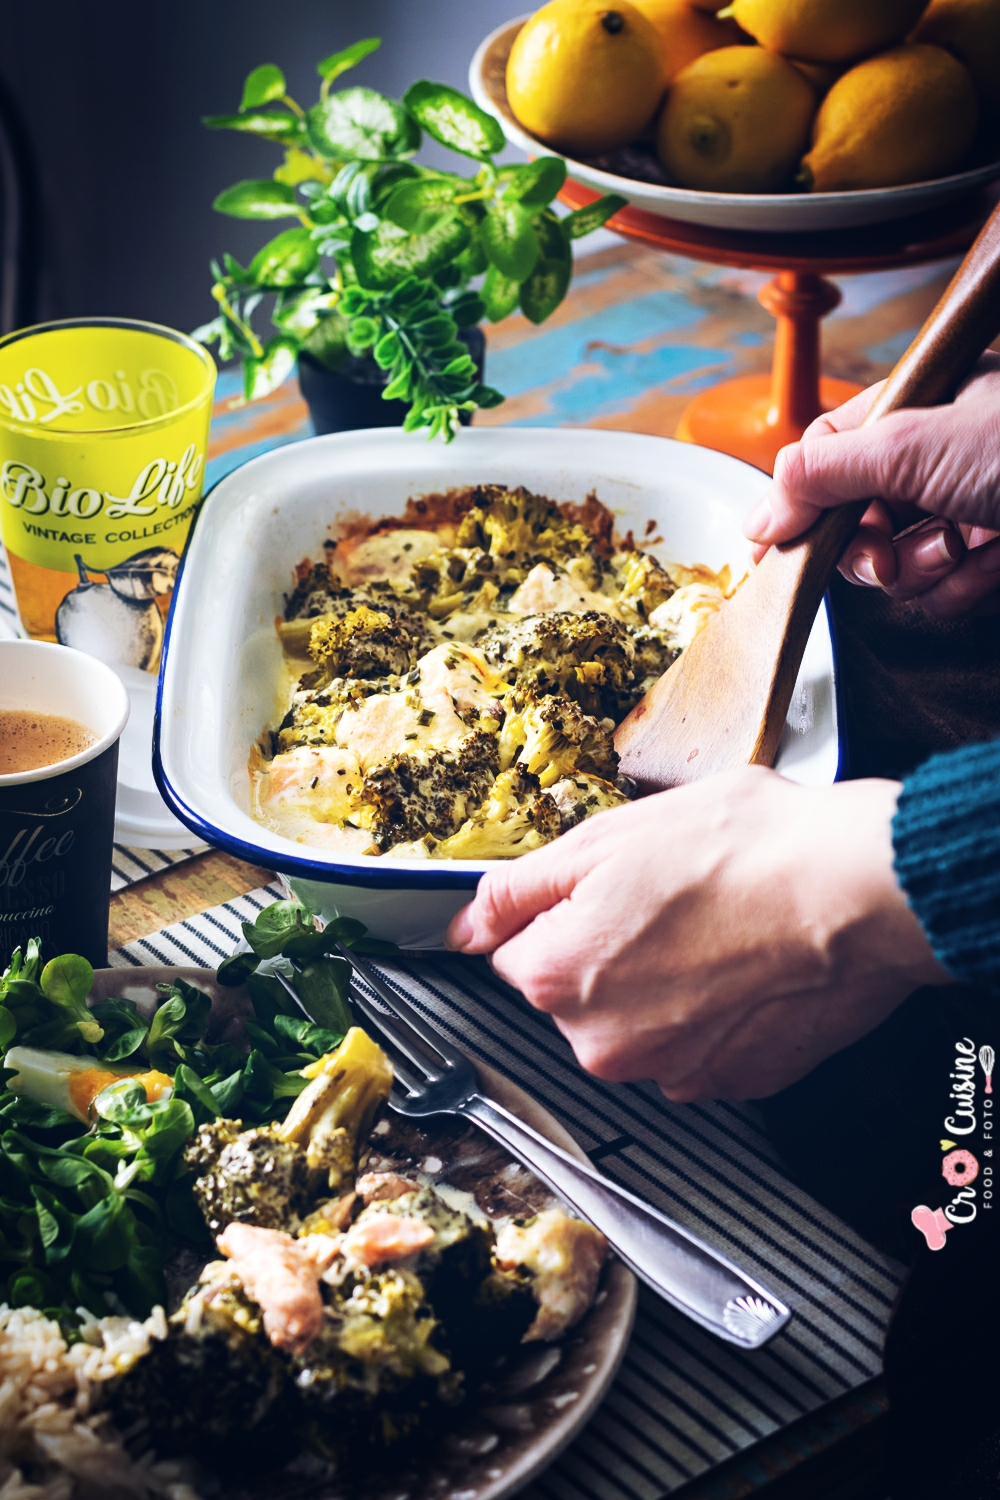 Un délicieux gratin citronné de brocolis au saumon idéal pour accompagner avec du riz, des pommes de terre vapeurs ou du ebly. Parfait pour petits et grands gourmands. 